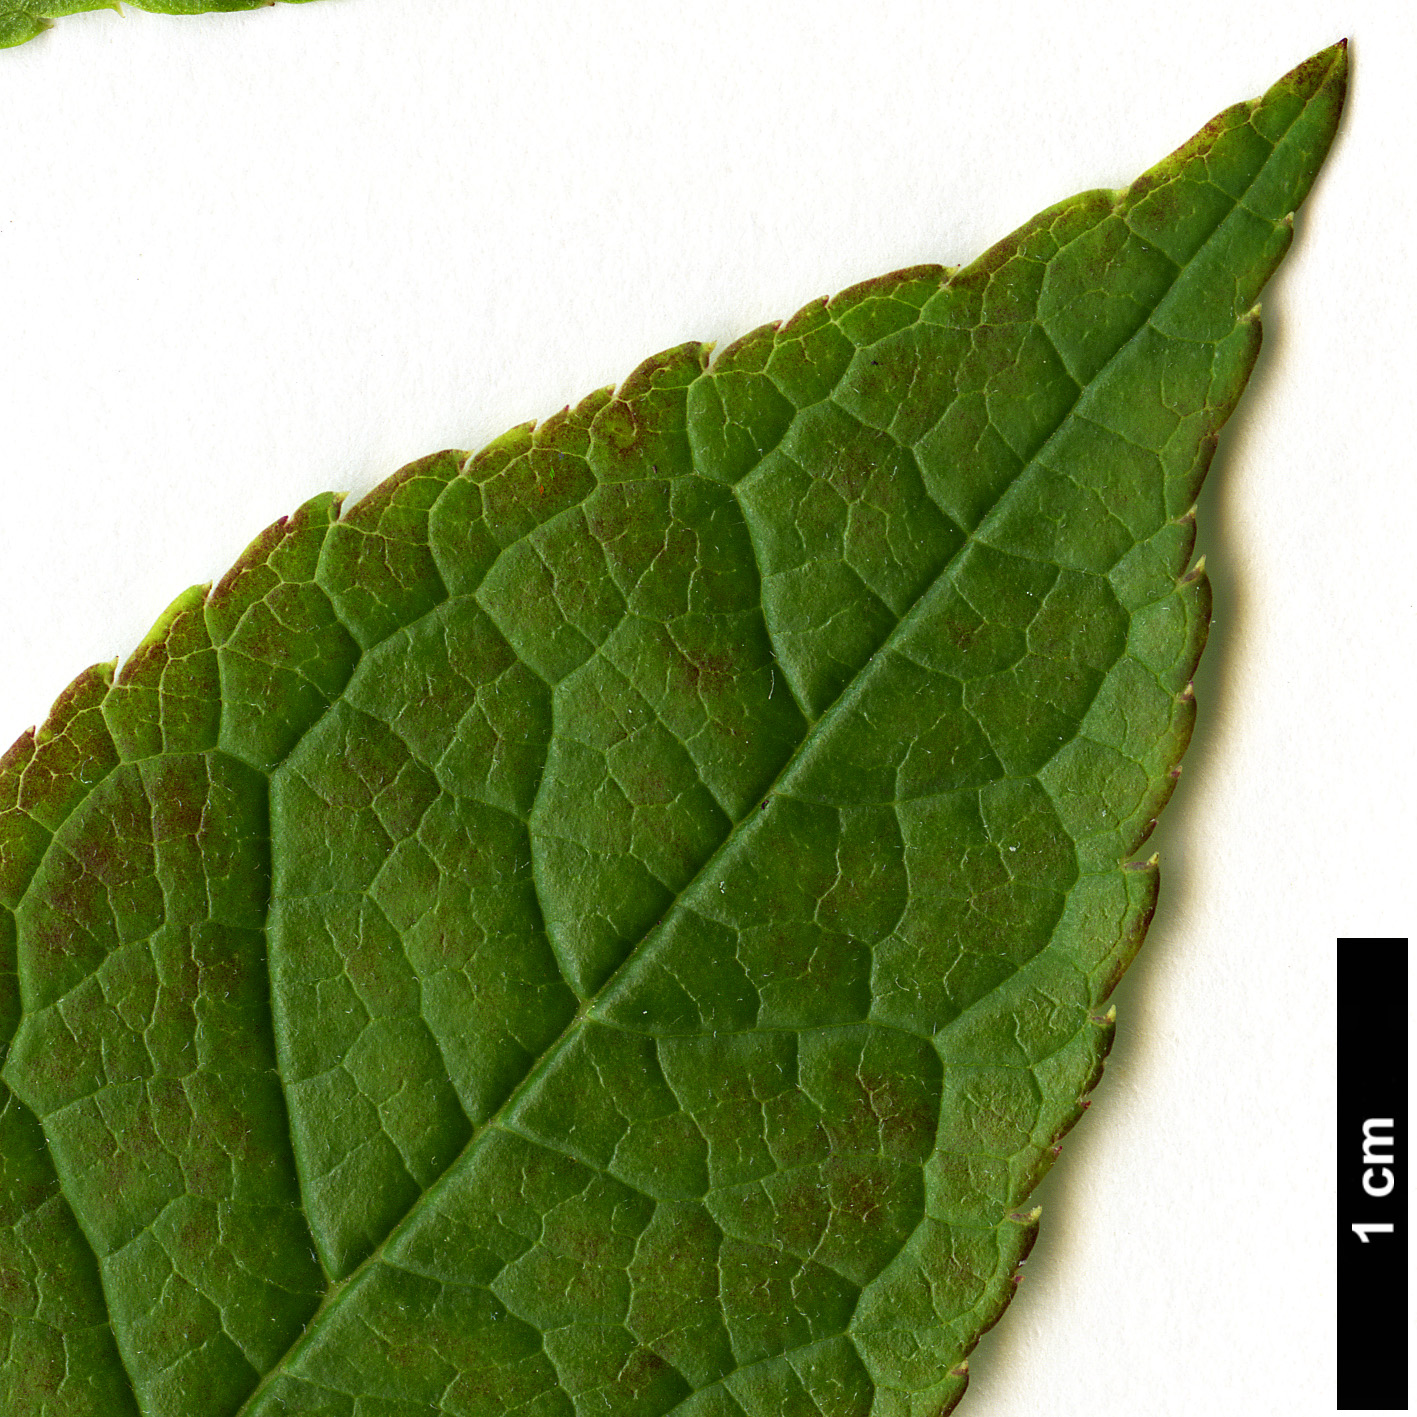 High resolution image: Family: Aquifoliaceae - Genus: Ilex - Taxon: verticillata